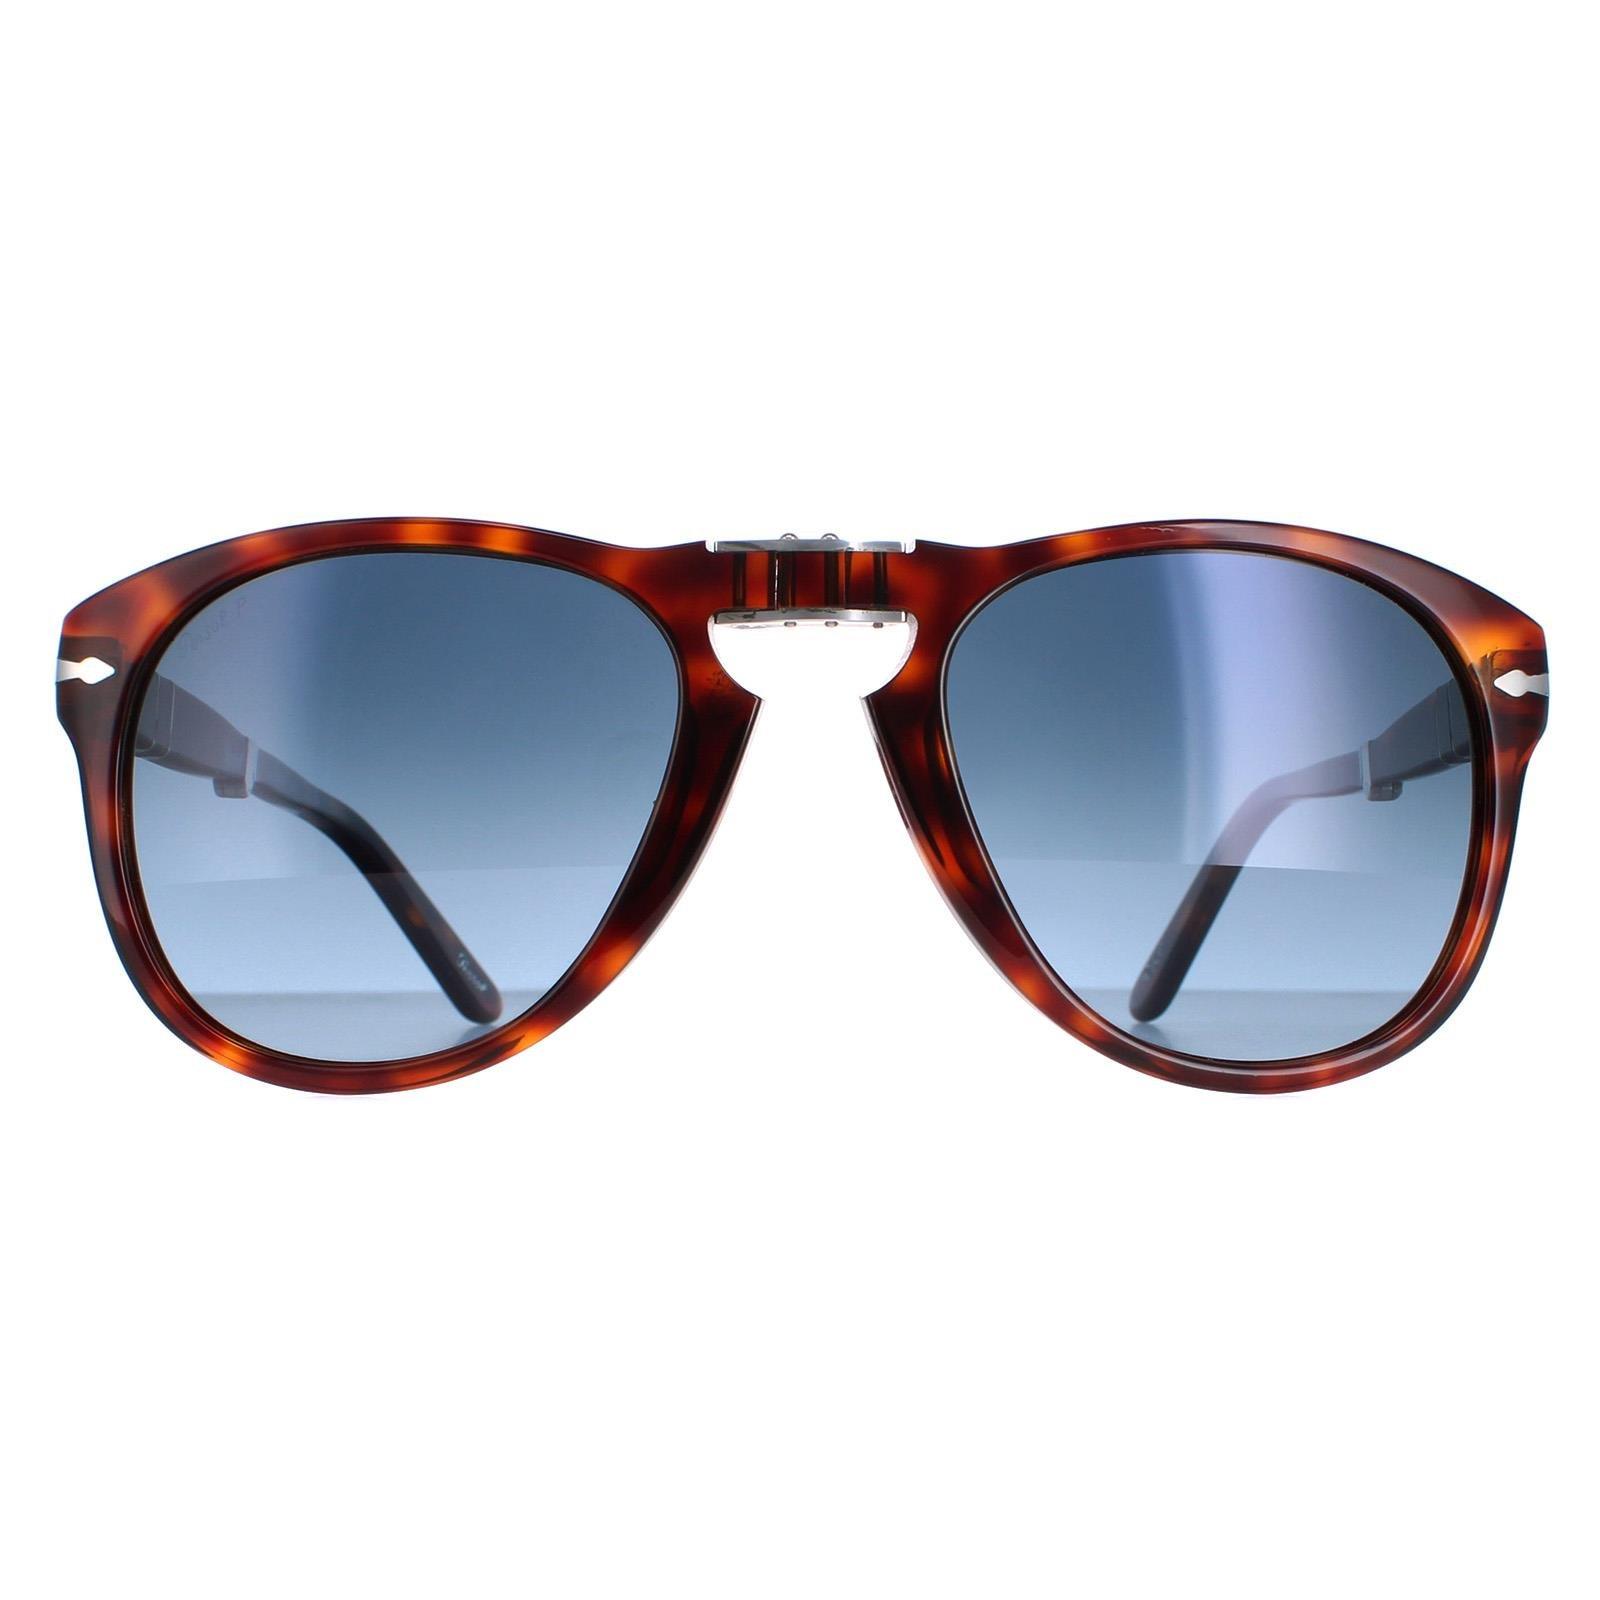 Коричневые гавана-синие поляризованные солнцезащитные очки Aviator с градиентом Persol, коричневый толстовка zara steve mcqueen hoodie черный